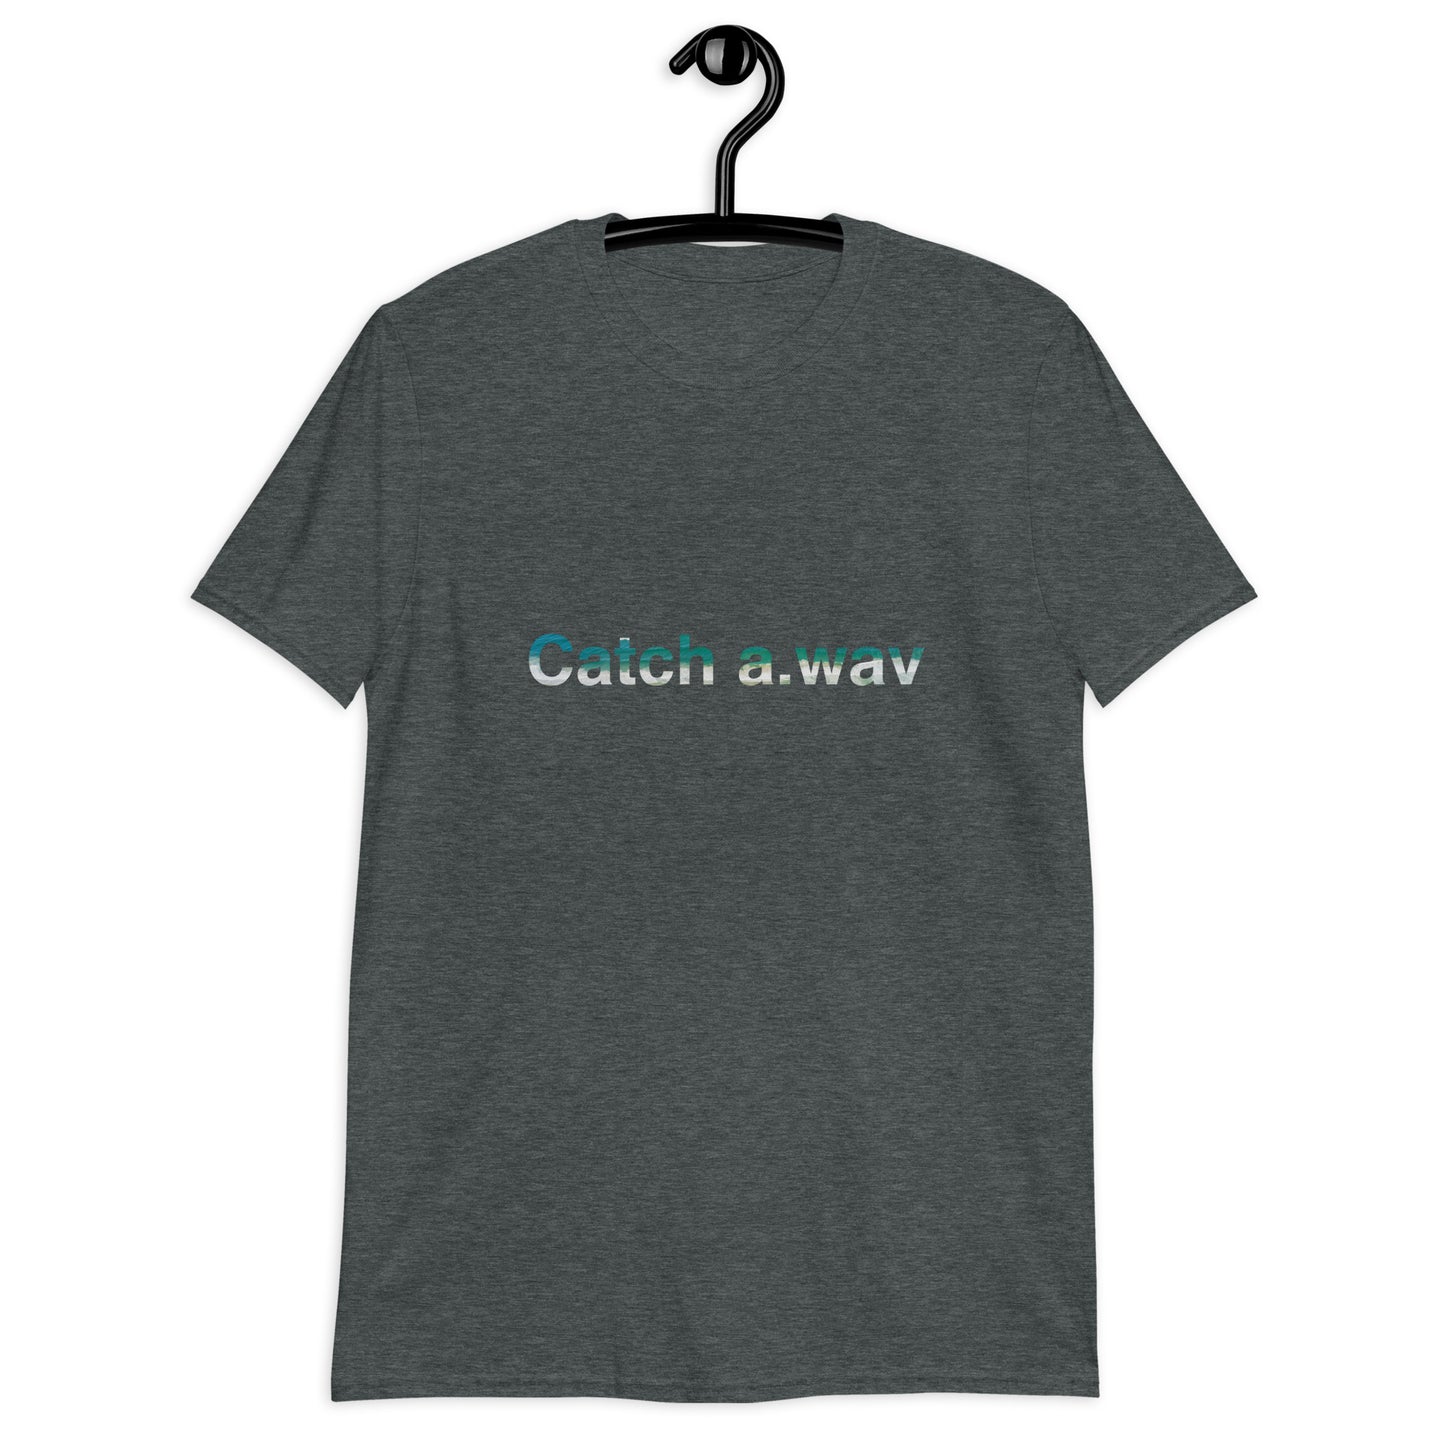 Catch a.wav T-Shirt